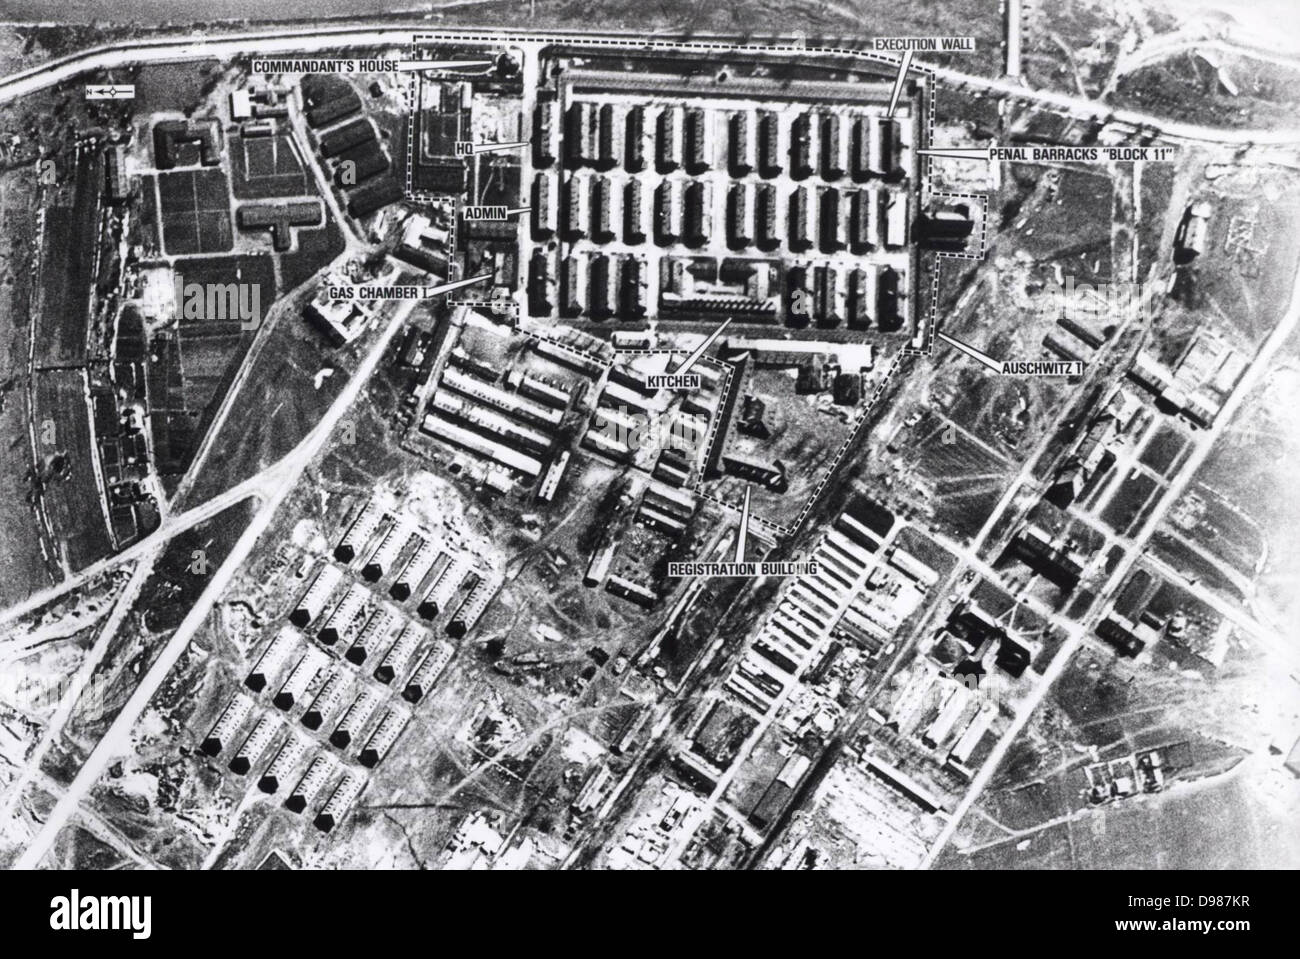 Luftaufnahme der Konzentrationslager Auschwitz I, am 4. April 1944. Auschwitz-Birkenau, Polen, war die größte der deutschen nationalsozialistischen Konzentrations- und Vernichtungslager während des Zweiten Weltkriegs. Stockfoto